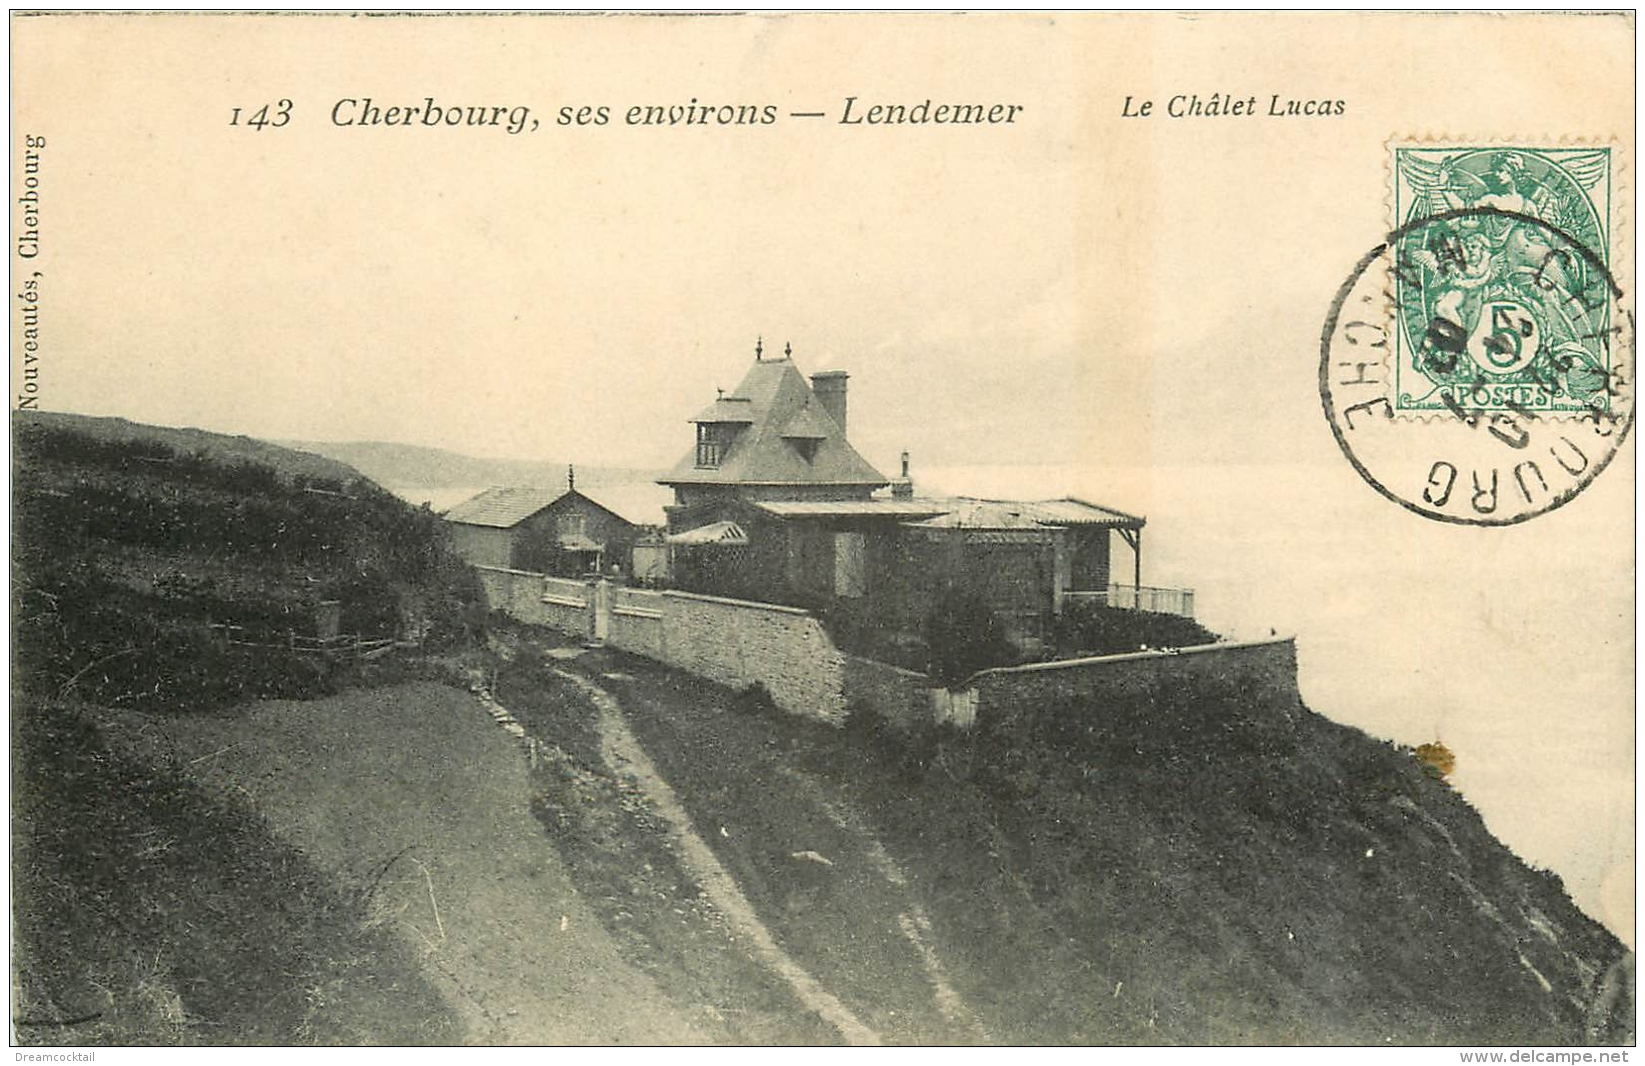 50 LANDEMER. Le Chalet Lucas 1907 - Cherbourg